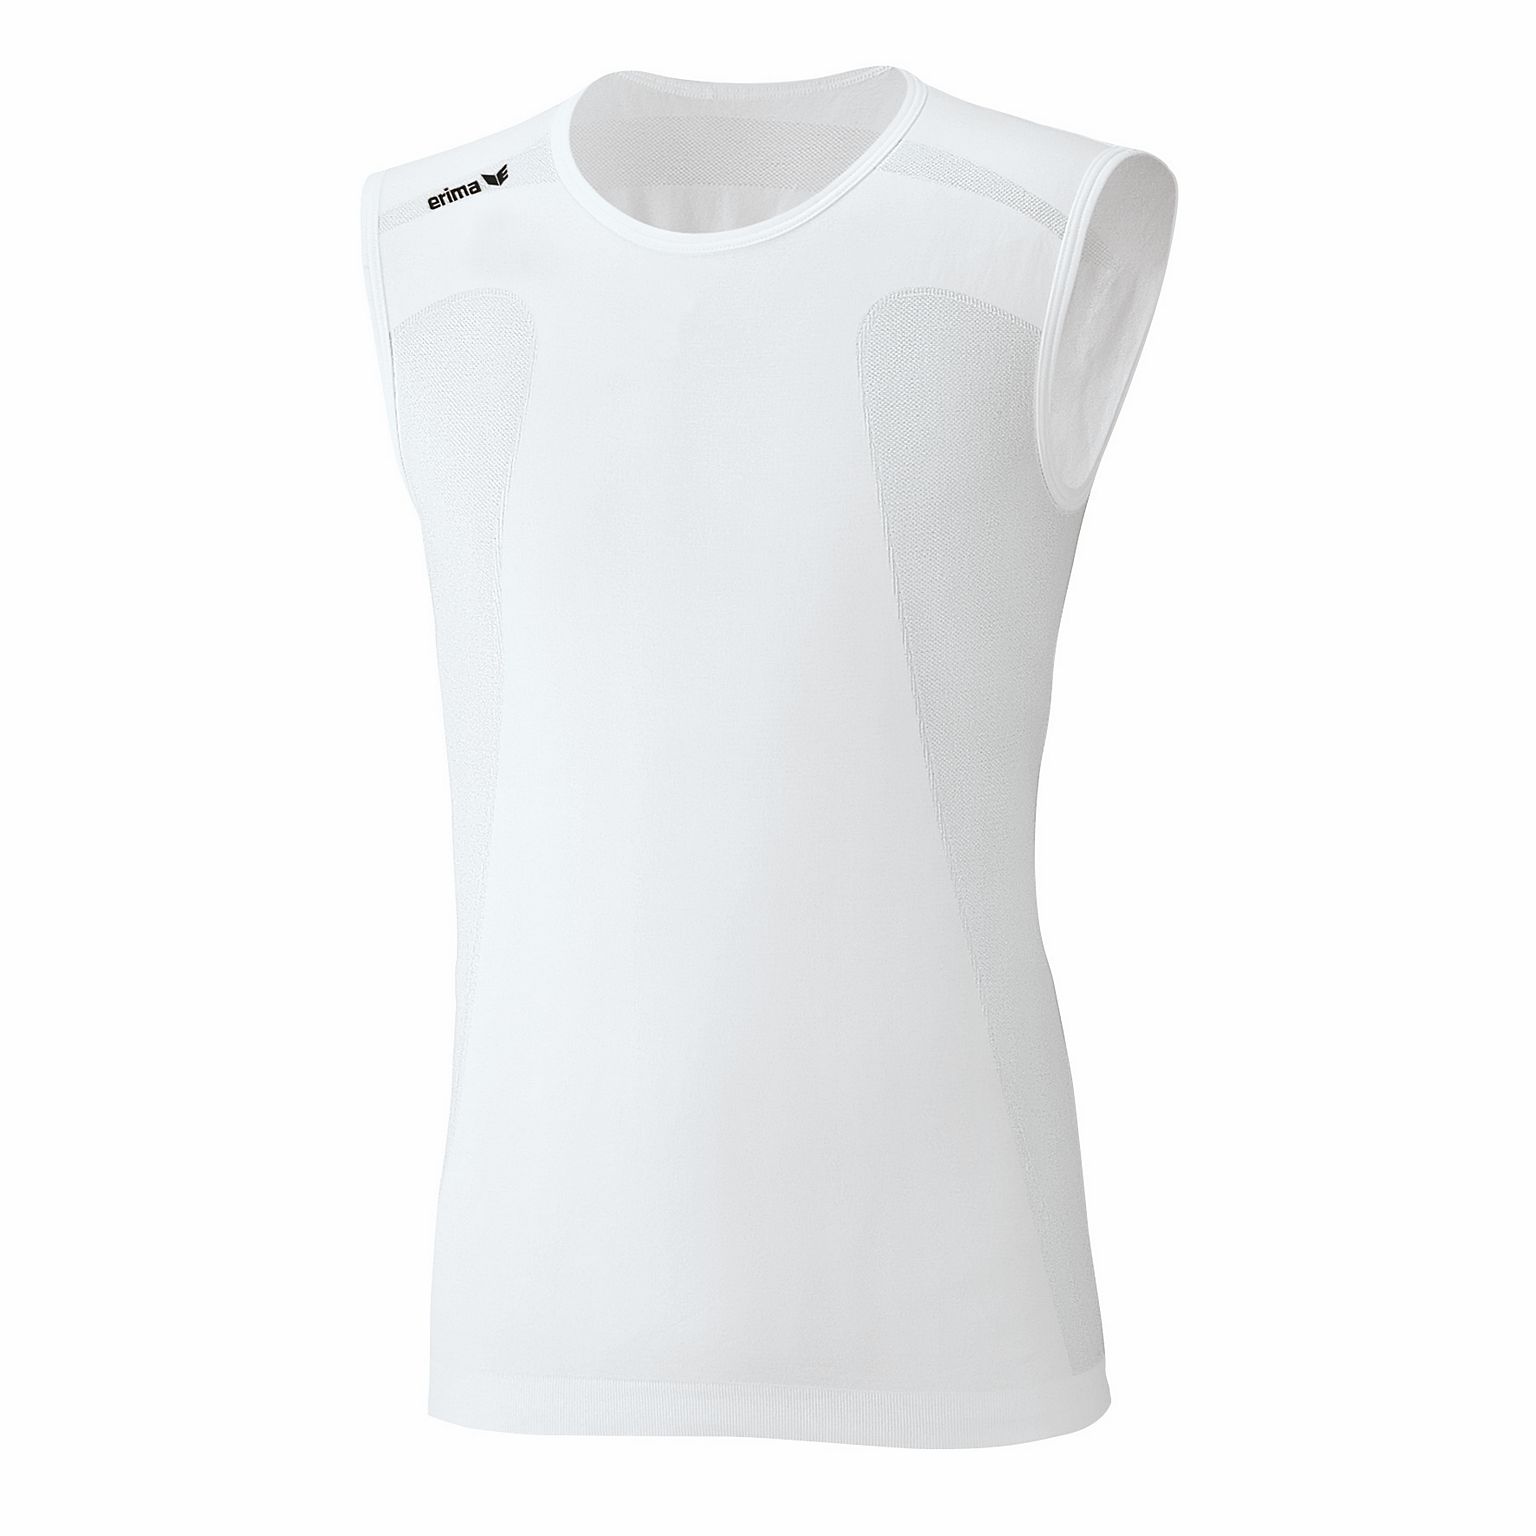 ERIMA Functional Shirt ohne Ärmel Weiß Gr. S M XL